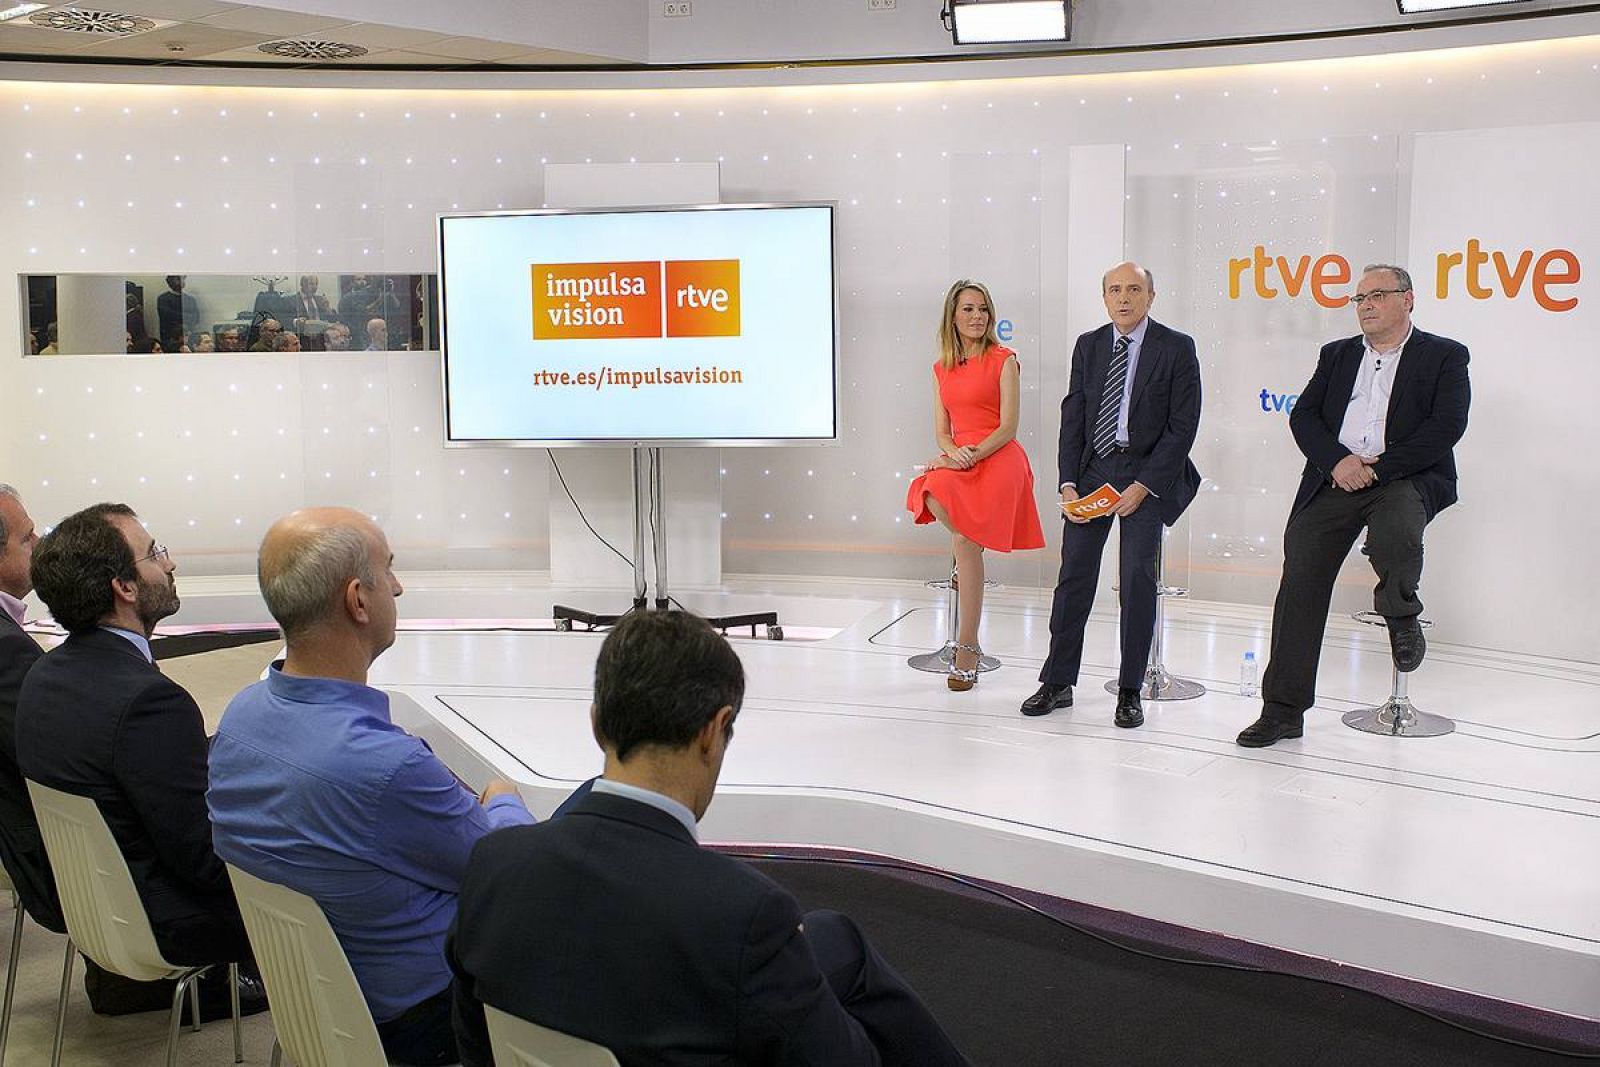  La presentadora de la rueda de prensa, Ana Belén Roy, el director general corporativo de RTVE, Enrique Alejo, y el jefe de la Unidad Gestión del Centro de Innovación de RTVE, Esteban Mayoral, en un momento de la presentación